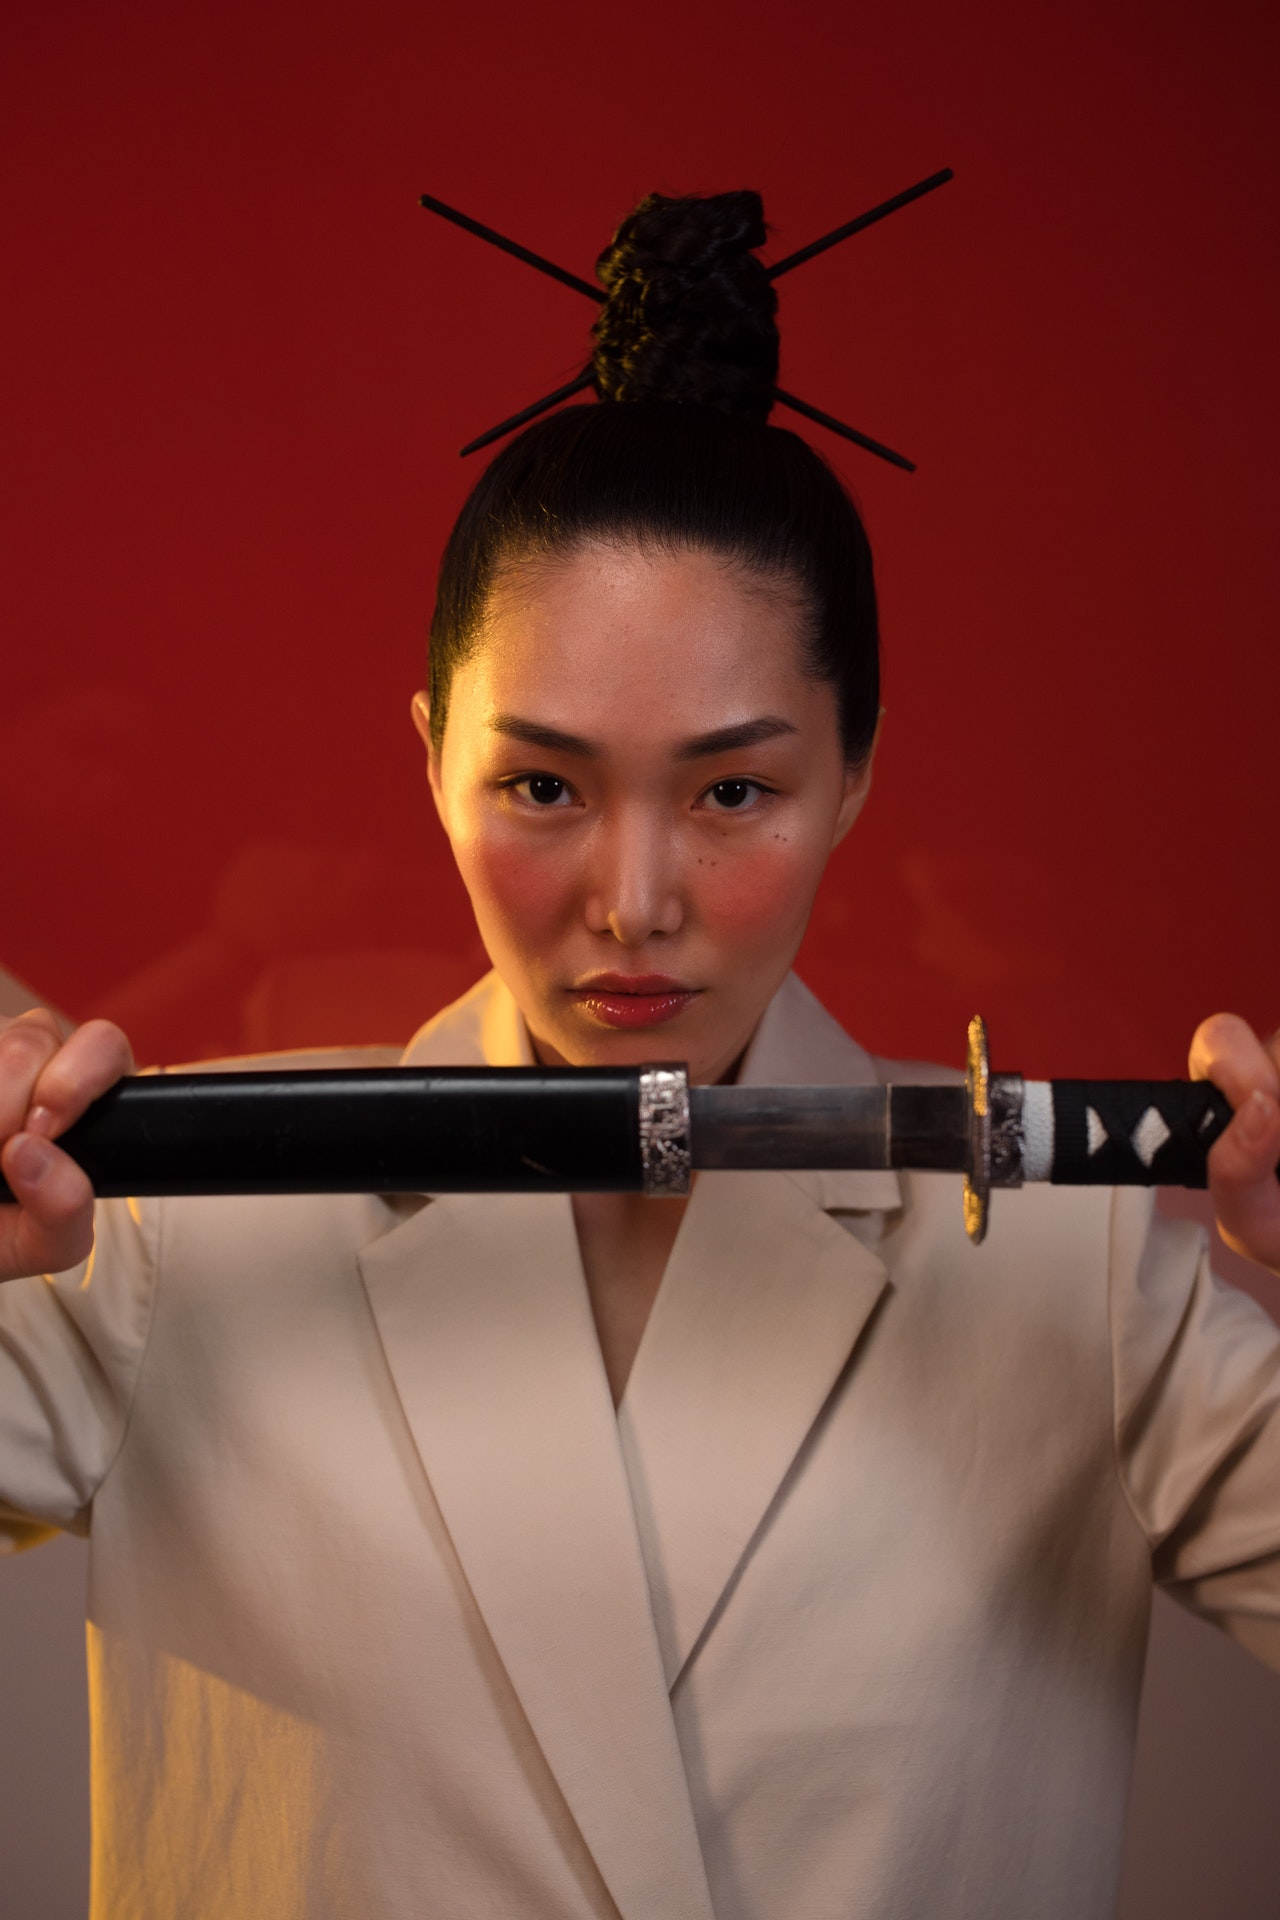 Het zwaard van de Samurai, de Katana